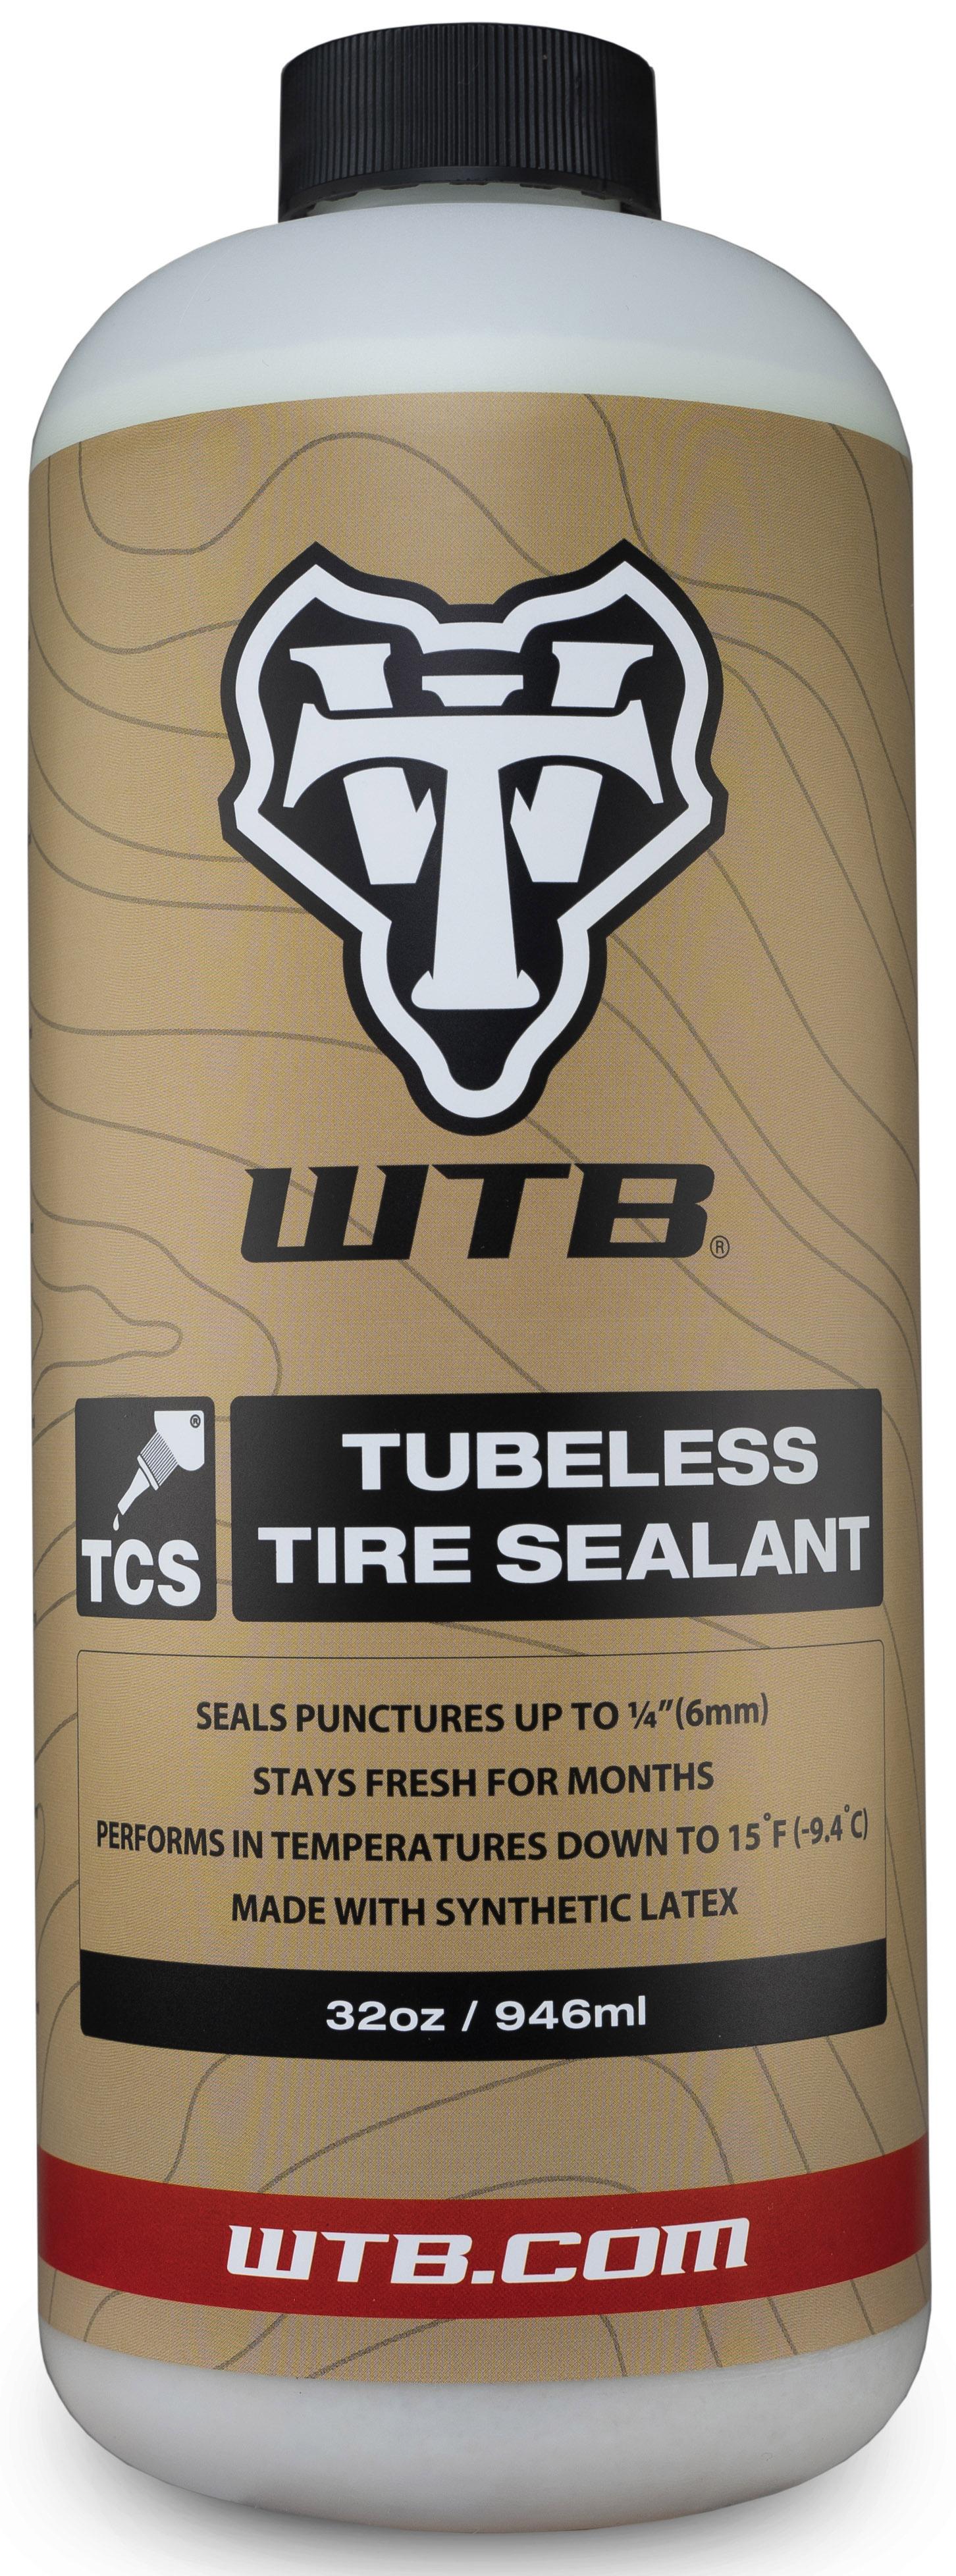 Wtb Tcs Tubeless Tyre Sealant - Neutral